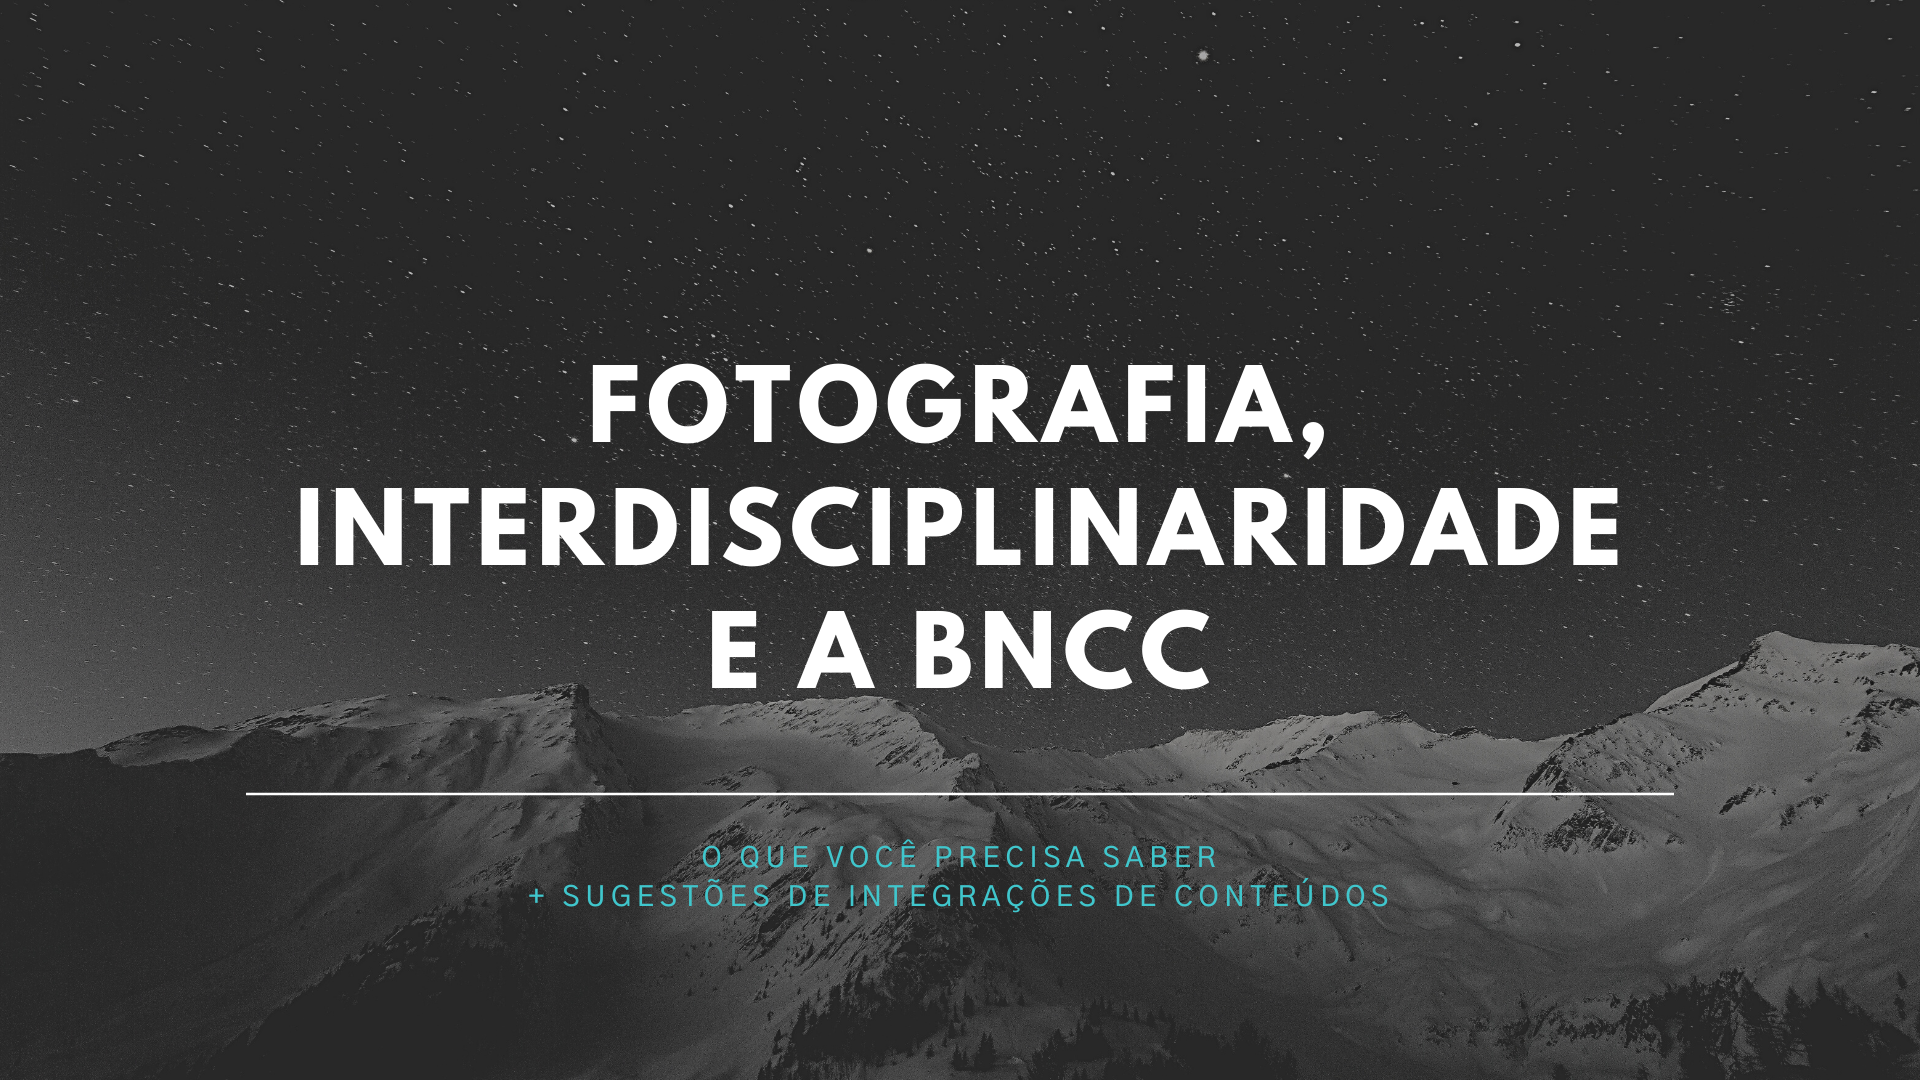 Você está visualizando atualmente Fotografia, interdisciplinaridade e a BNCC